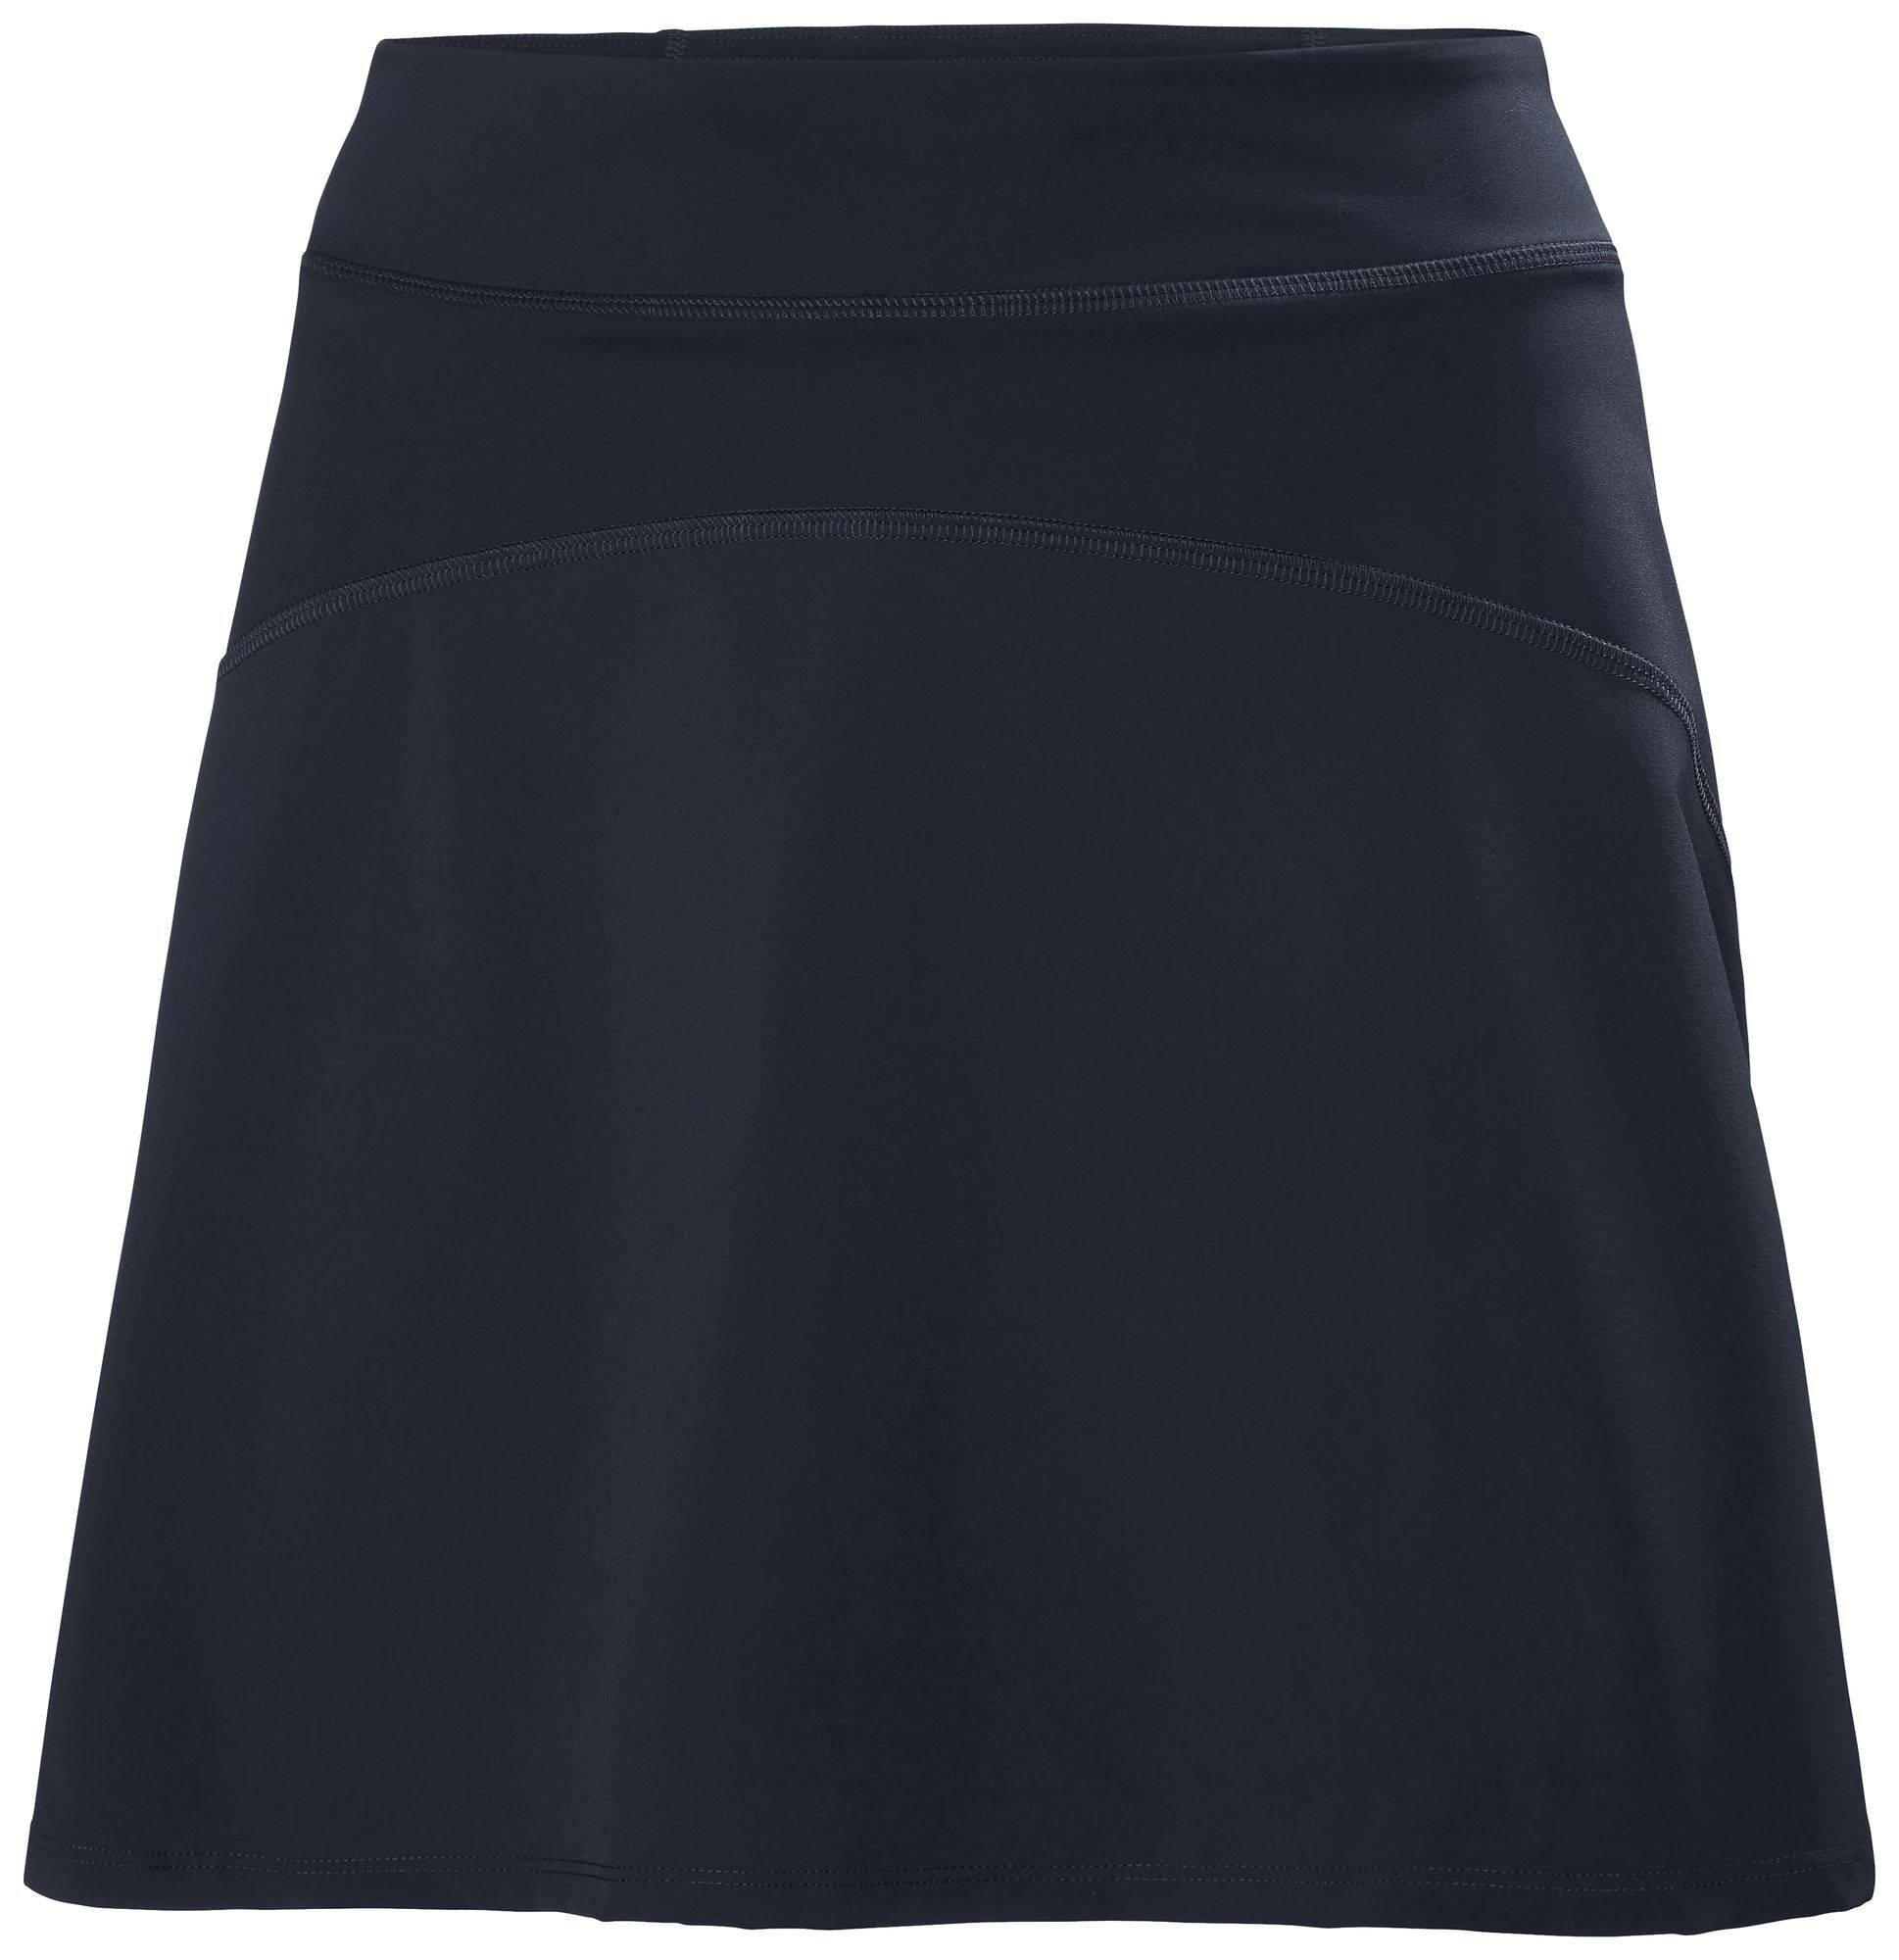 Helly Hansen HP Skort - Women's Short skirt | Hardloop